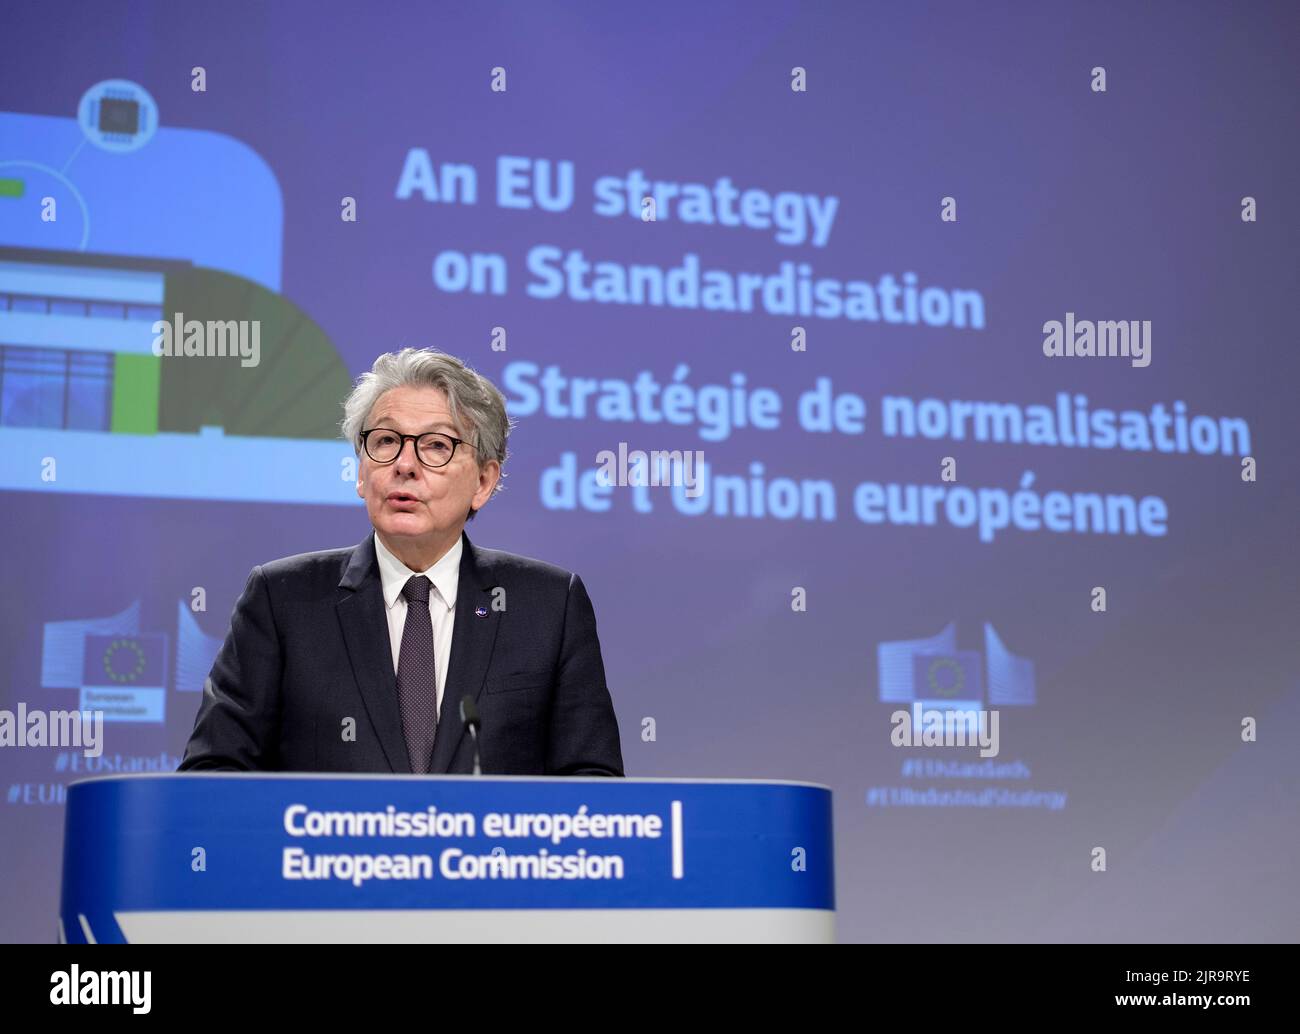 Bruxelles: Thierry Breton, Commissario per il mercato interno dell’Unione europea, dopo aver presentato lo “Standardisation Strateg” della Commissione europea Foto Stock